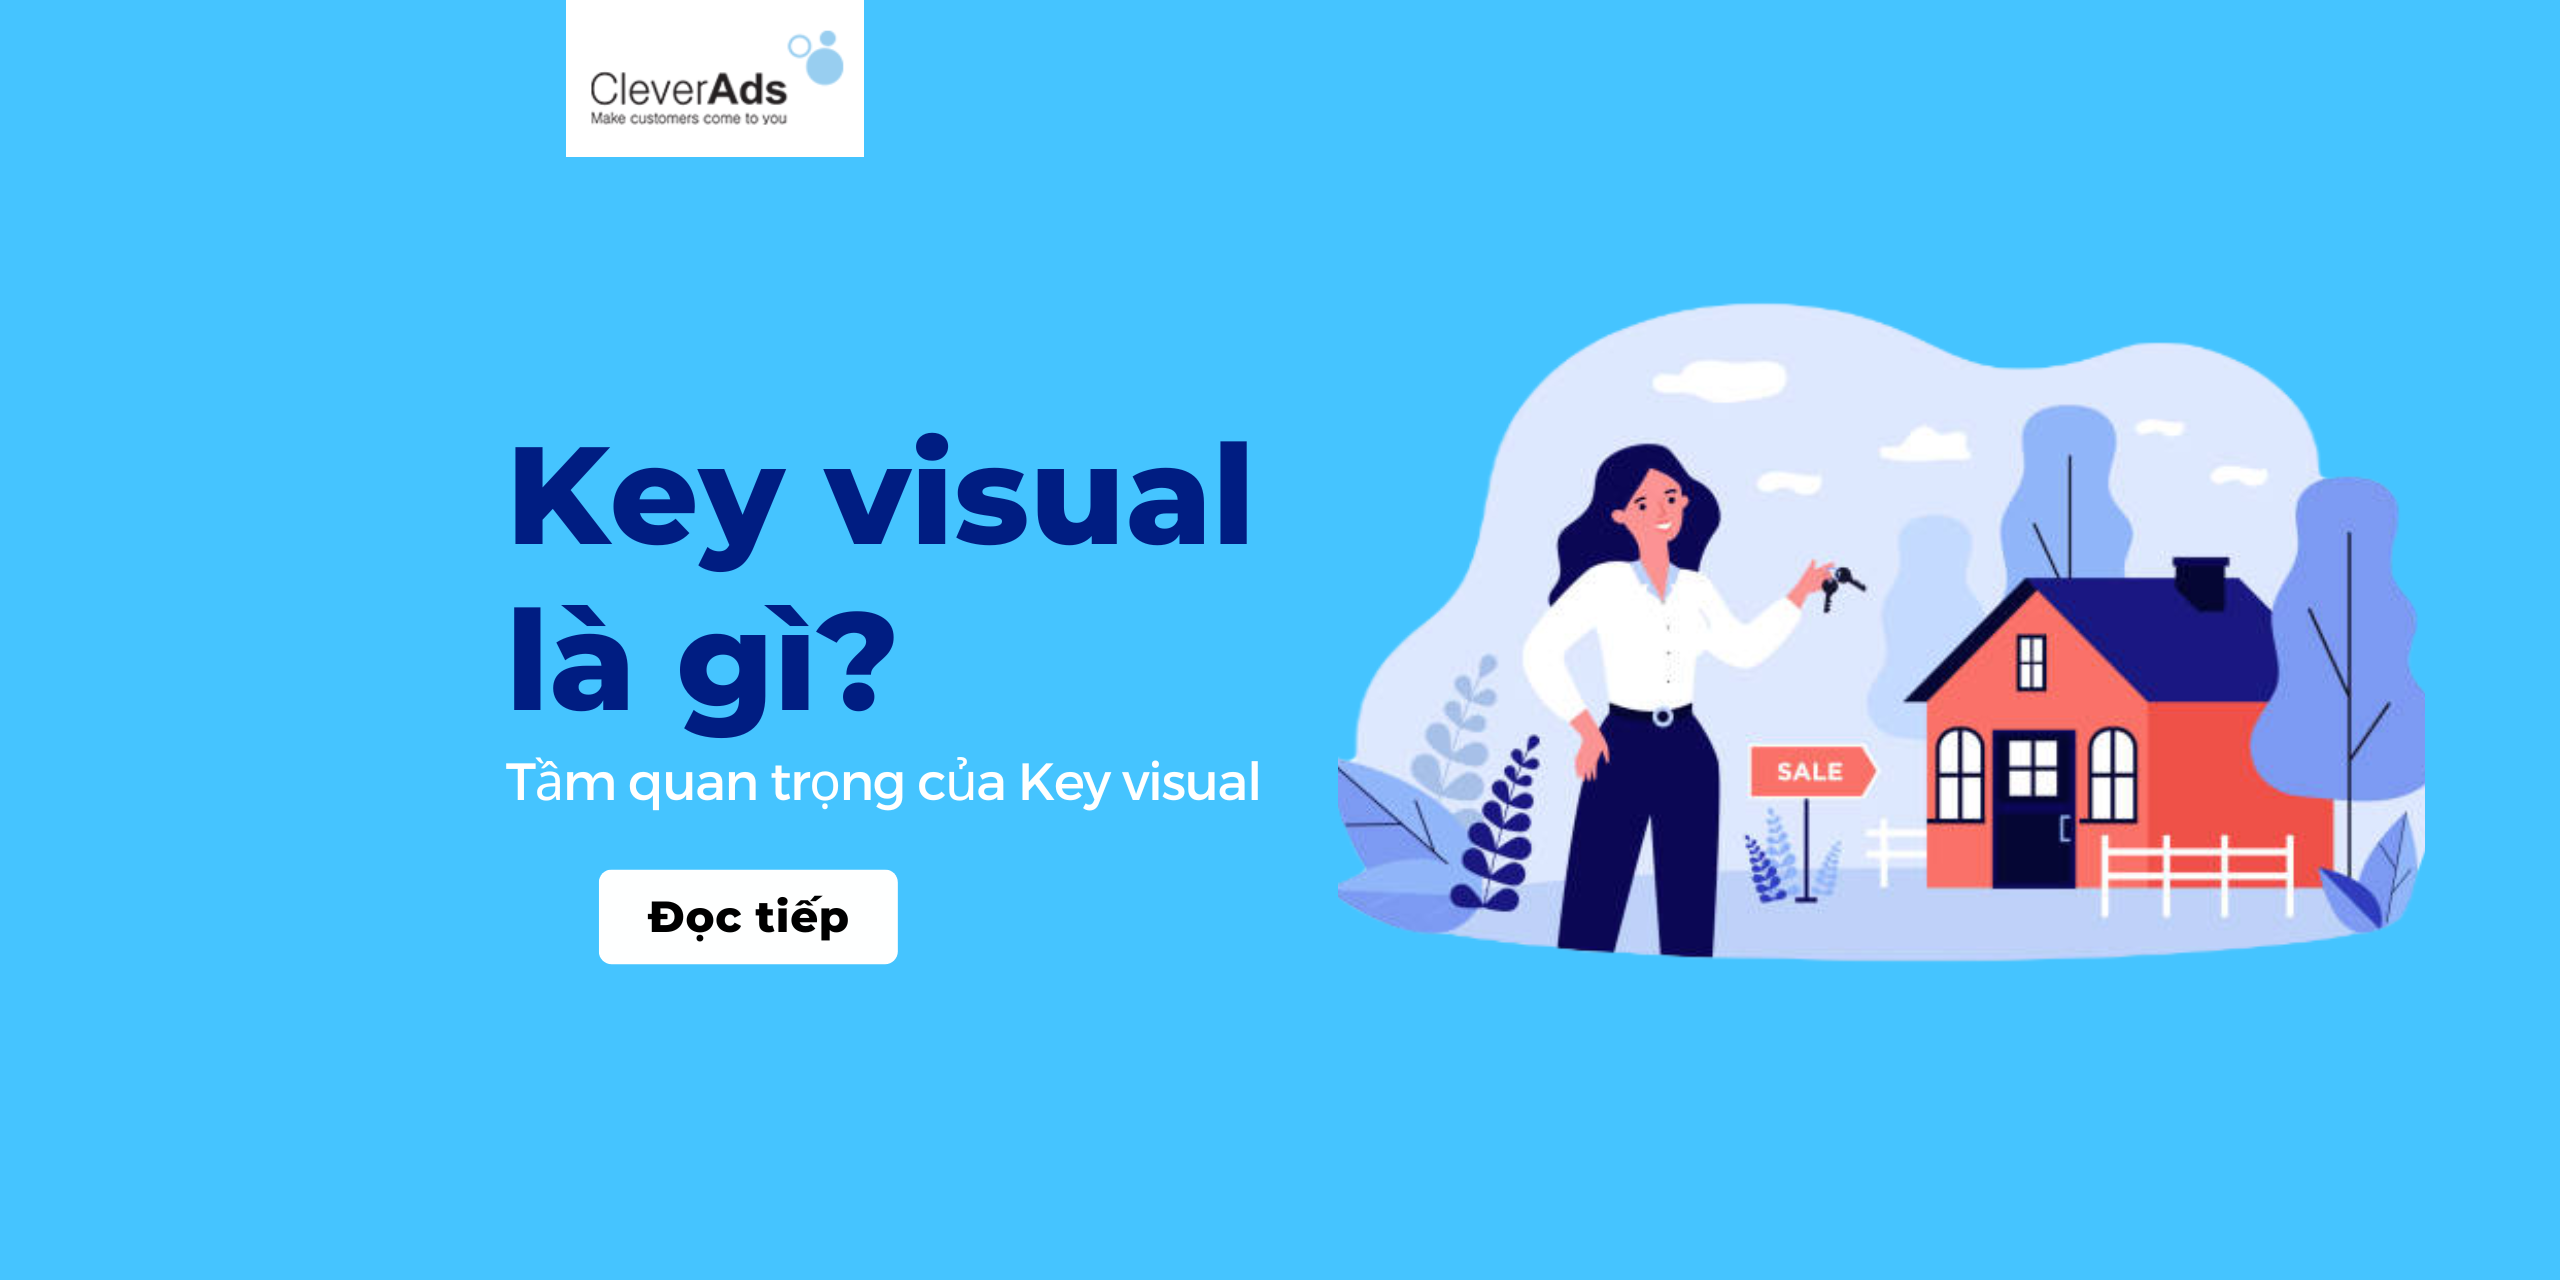 Key visual là gì? Tầm quan trọng của Key visual trong chiến dịch truyền thông